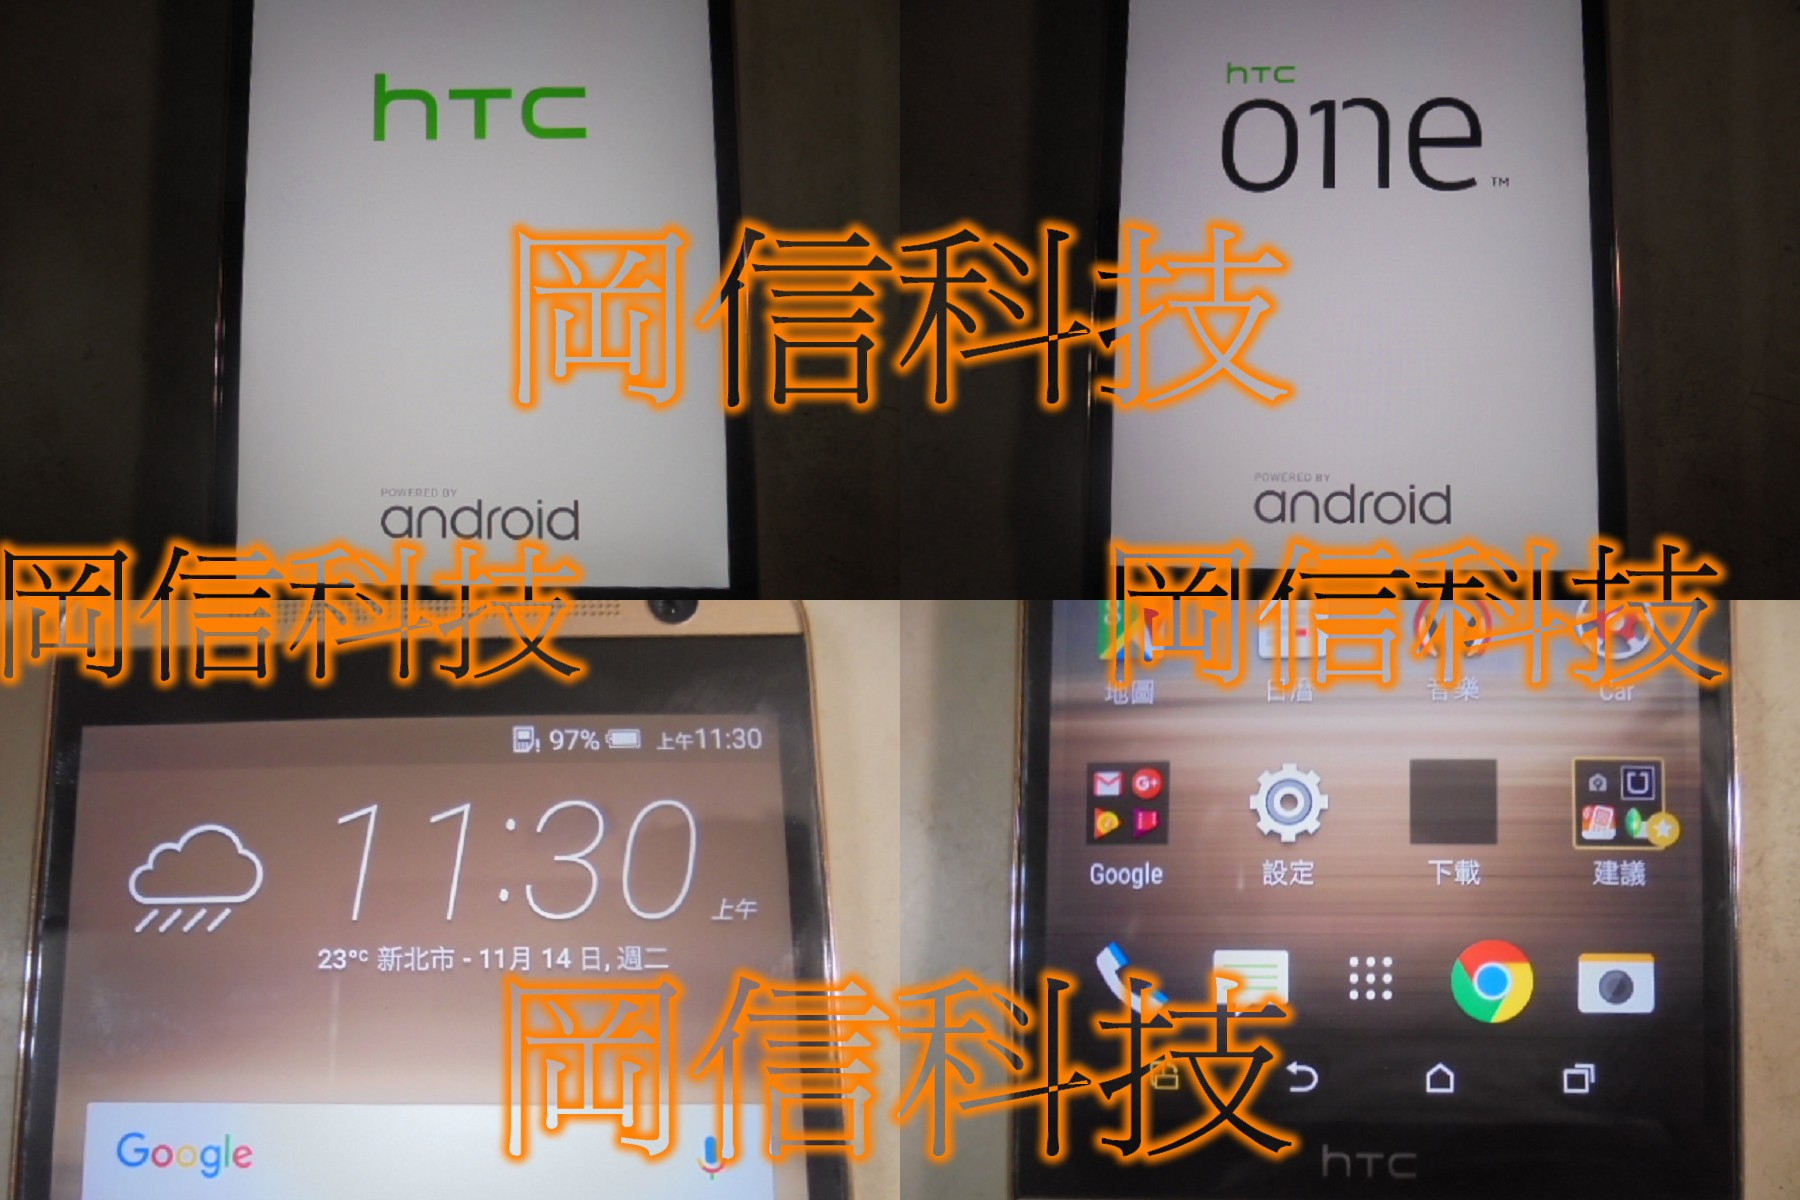 HTC智慧型手機－照片╱相片╱影片╱檔案資料救援